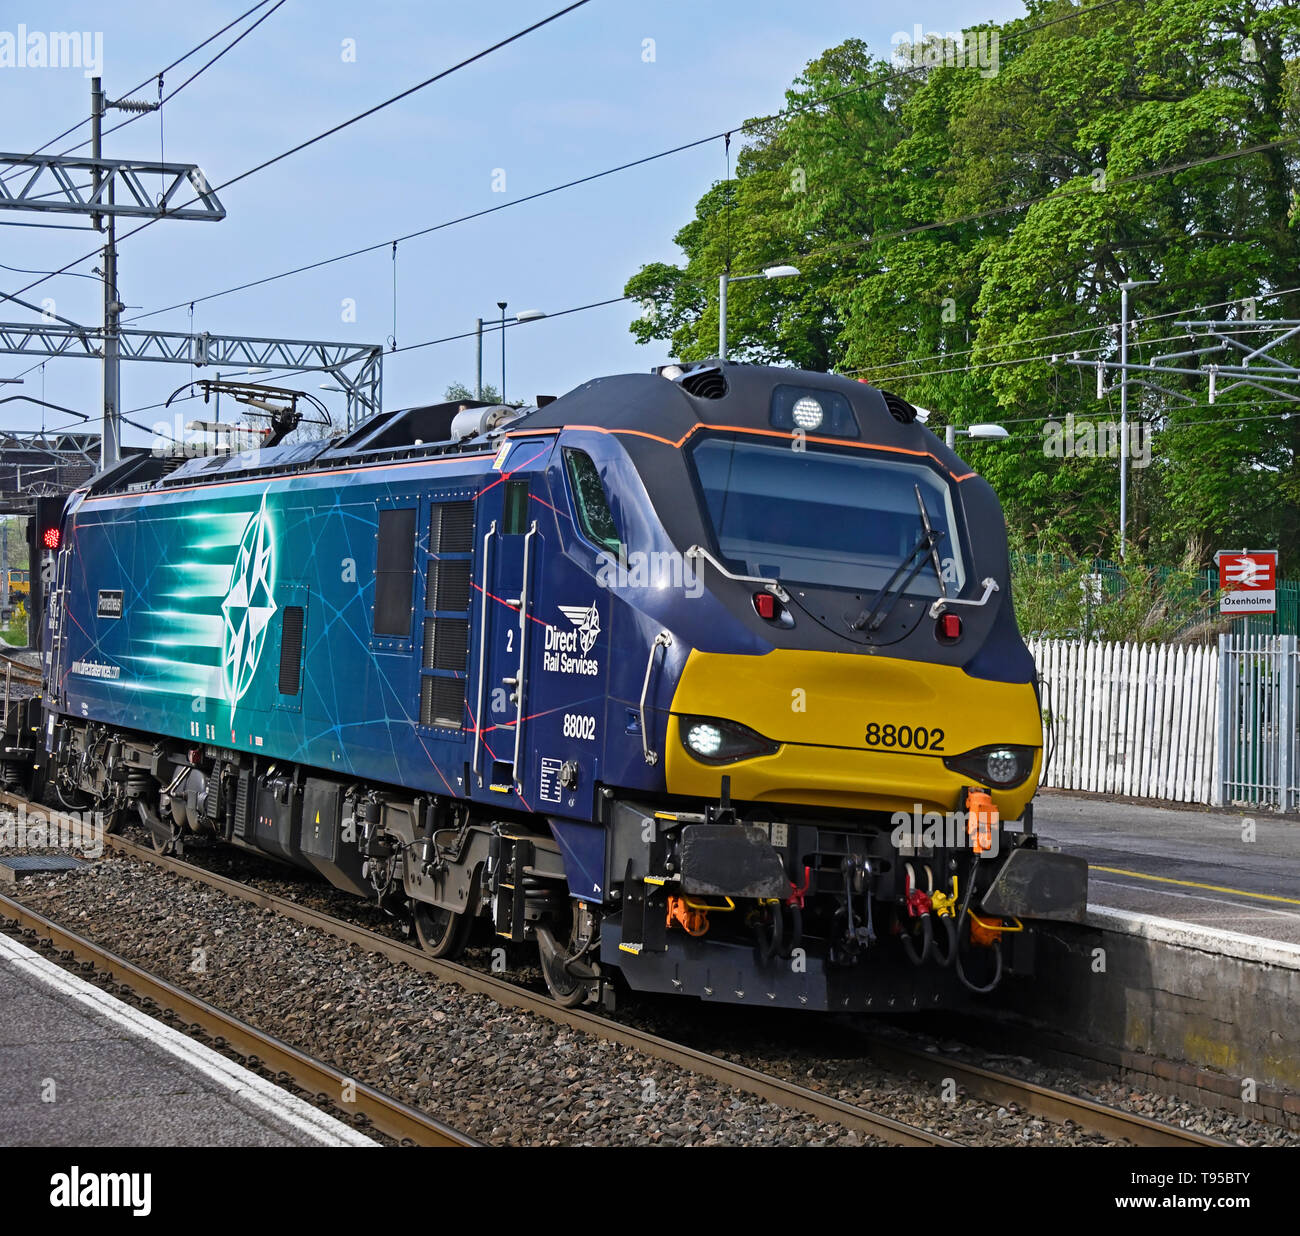 Classe 88 Services ferroviaire direct No88002 locomotive 'Prométhée' transportant les marchandises diverses sur la West Coast Main Line. Oxenholme, Cumbria, Angleterre, Royaume-Uni Banque D'Images